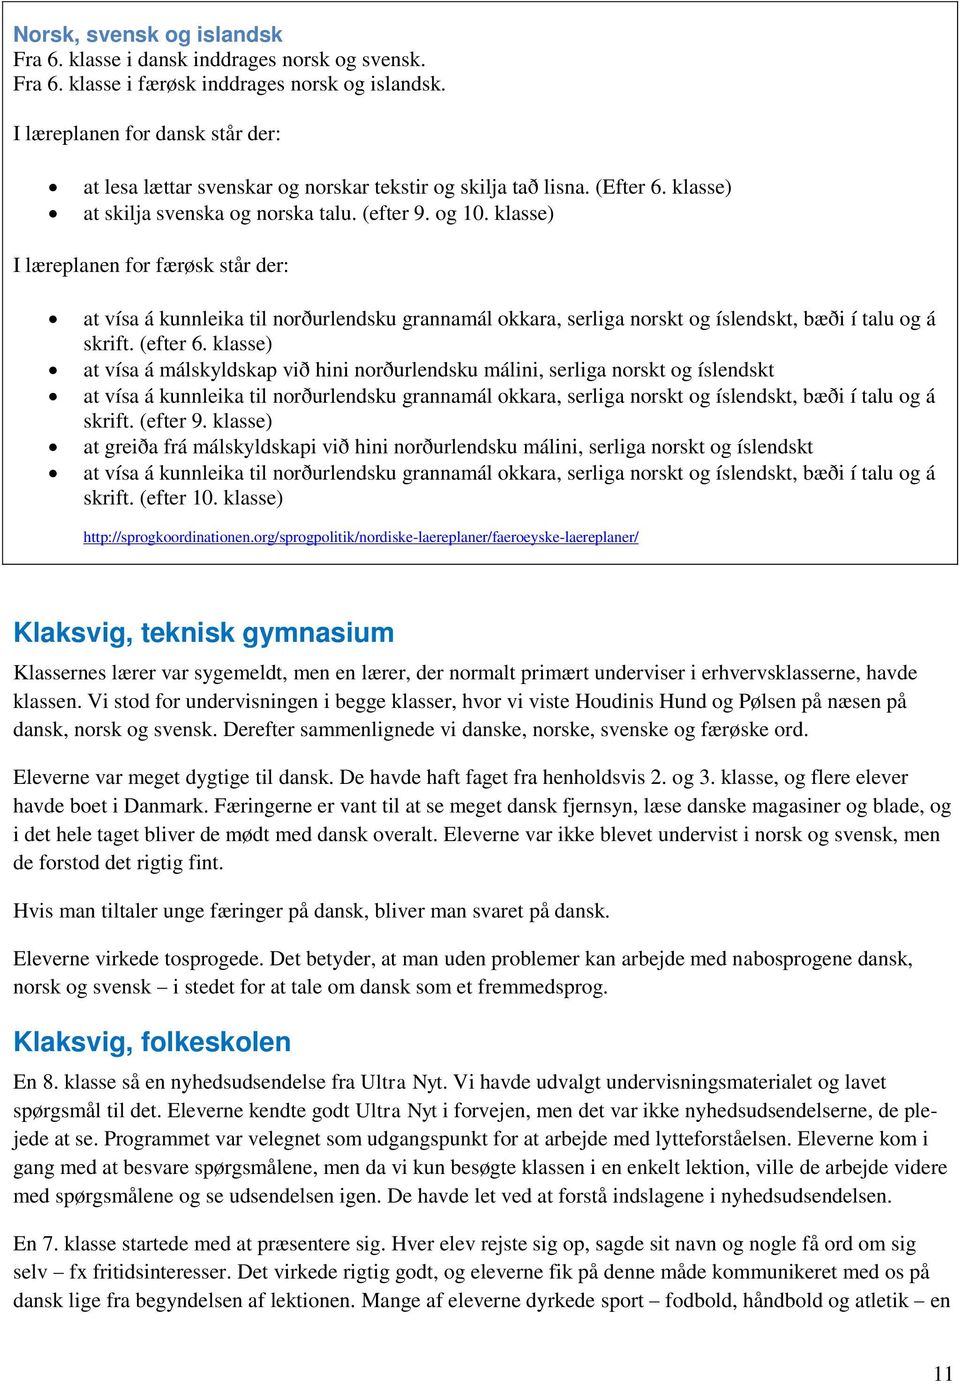 Nordiske. Forsøgsklasser. Resultatrapport. Lise Vogt - PDF Gratis download